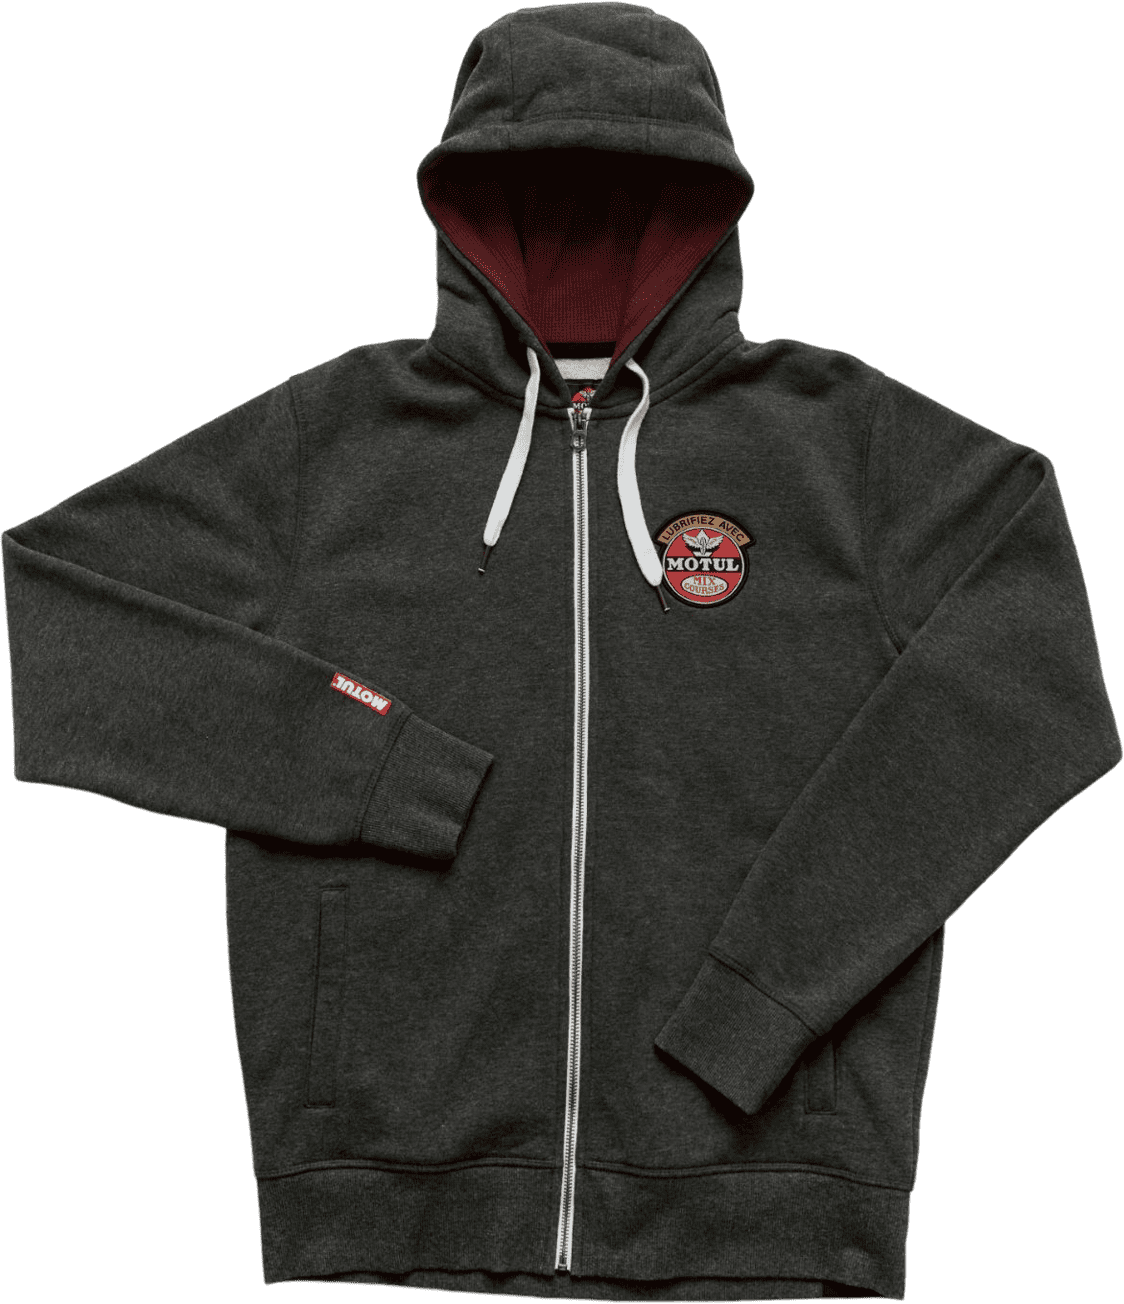 207972 MOTUL sweatshirt met capuchon, ritssluiting aan de voorkant en het MOTUL-logo geborduurd op de voorkant, terwijl de mouwen voorzien zijn van kleine labels.